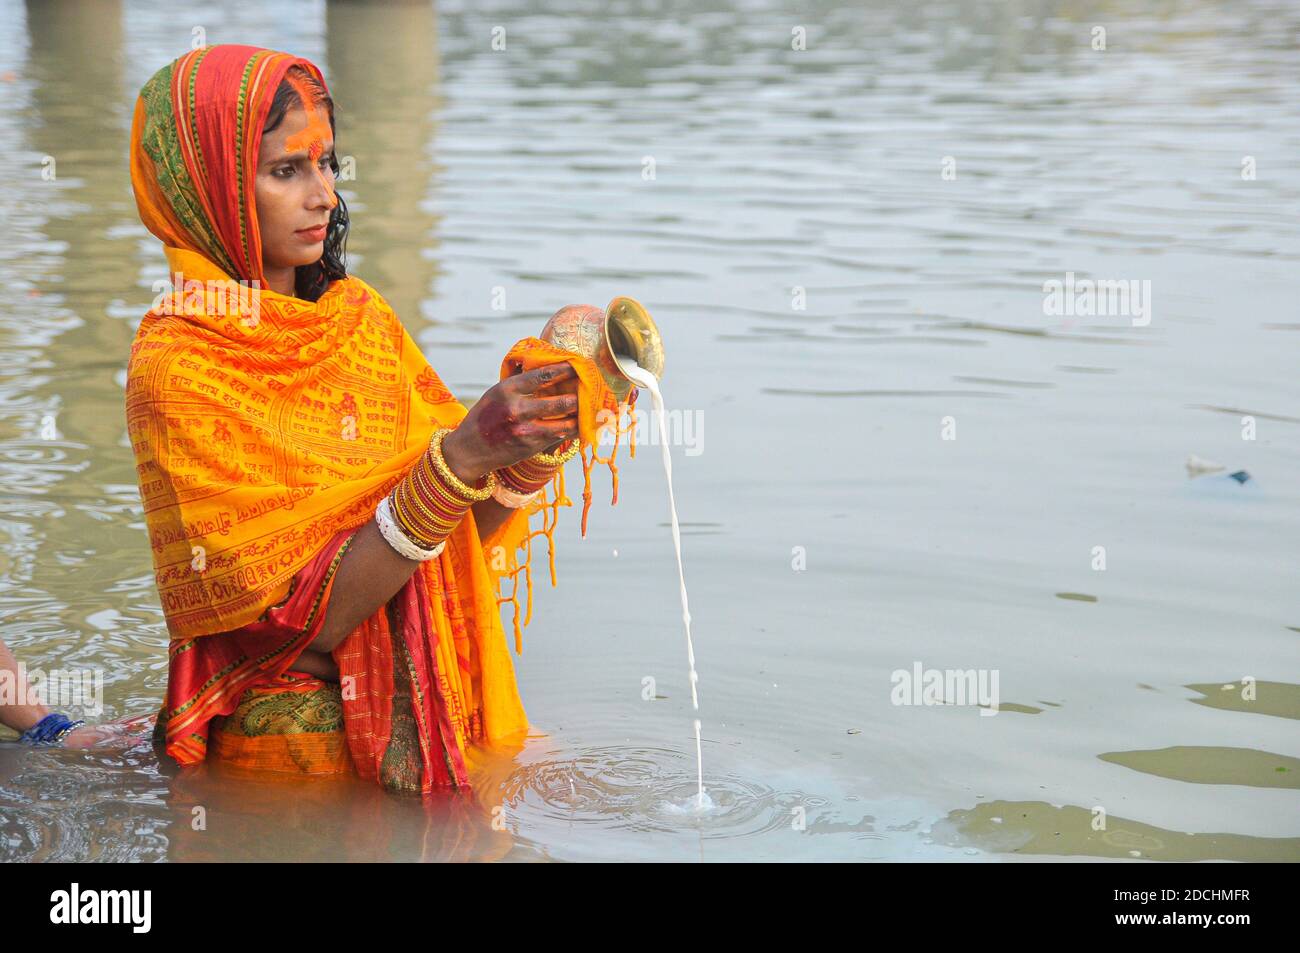 Les dévotés de la Communauté Horizon observent les rituels du Chhath Puja ou du Surjjo Puja sur la rive de la rivière Surma de Sylhet, au Bangladesh. Banque D'Images